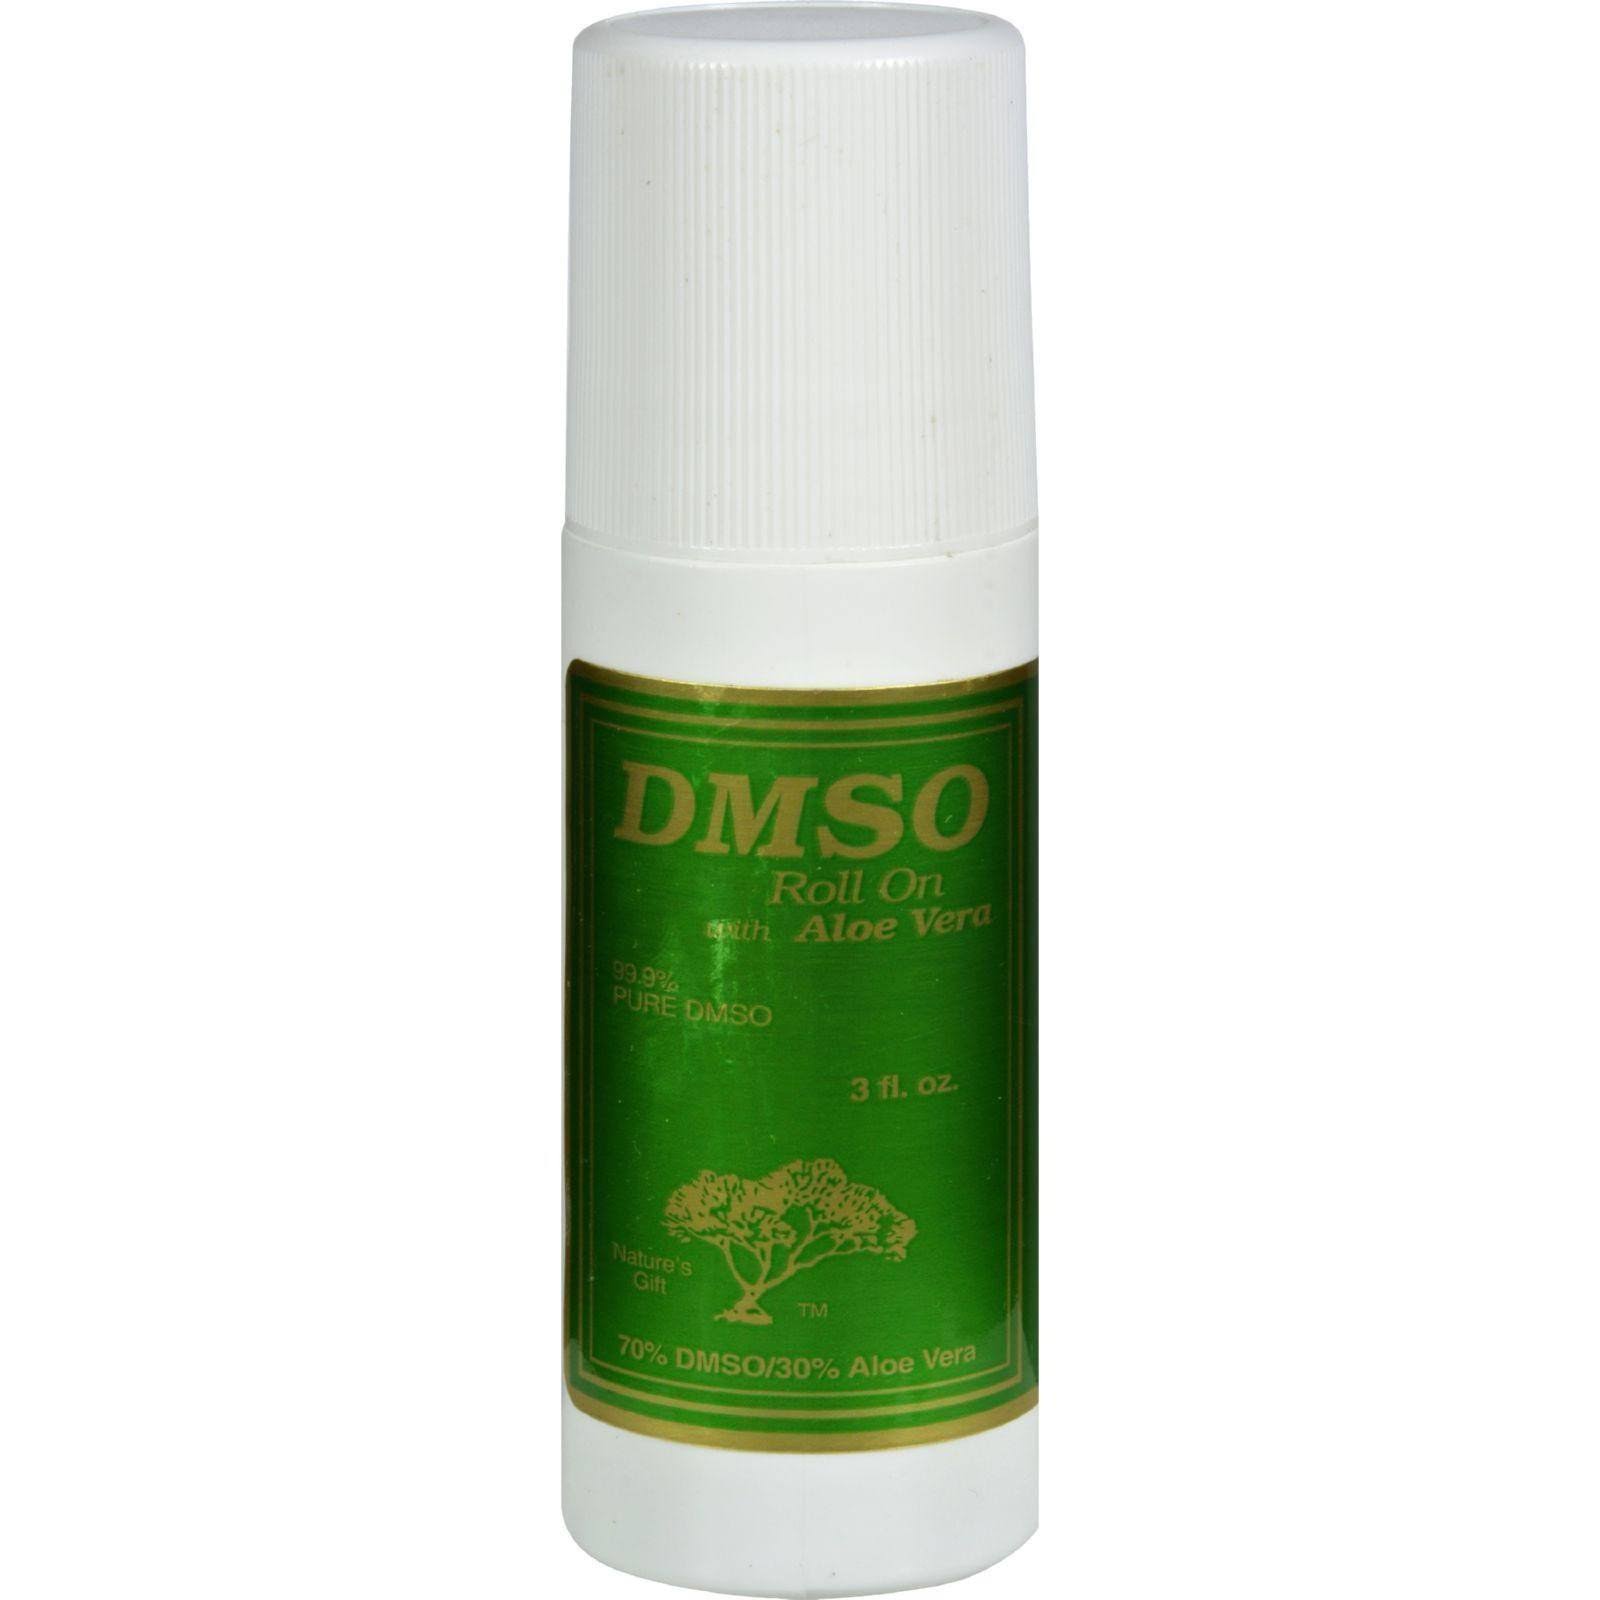 DMSO Roll-On - 3 fl oz, with Aloe